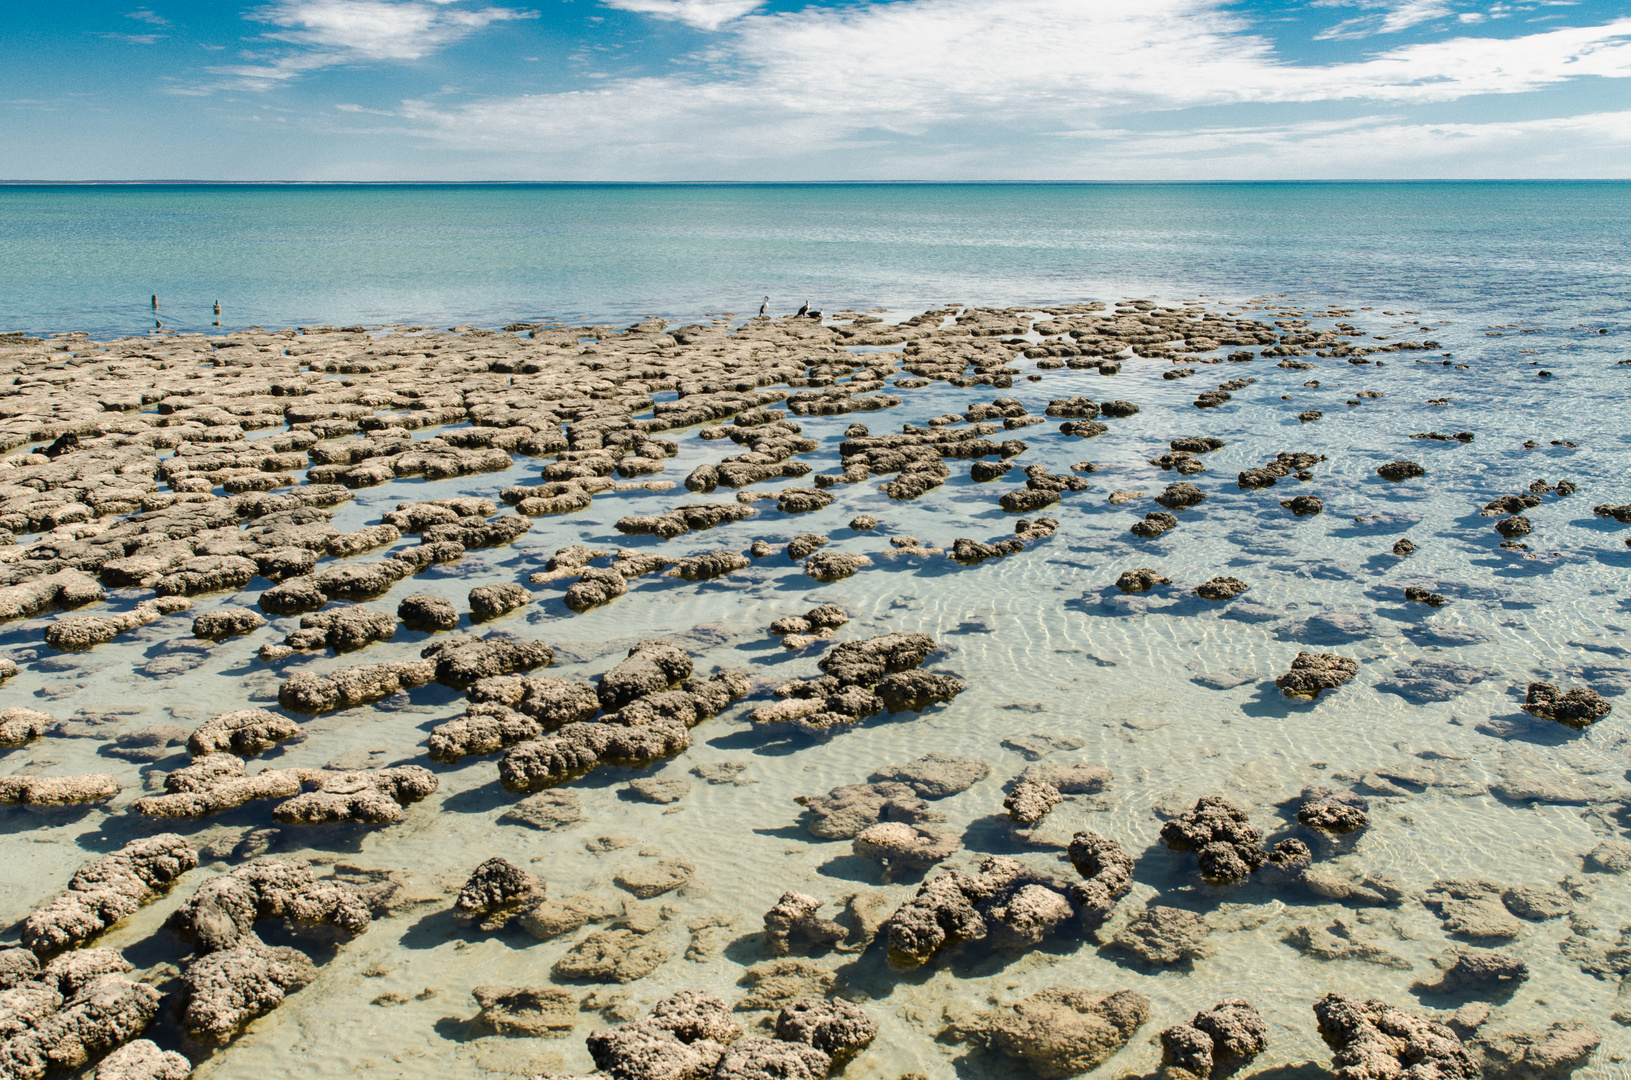 Stromatolithen-Ursprung des Lebens